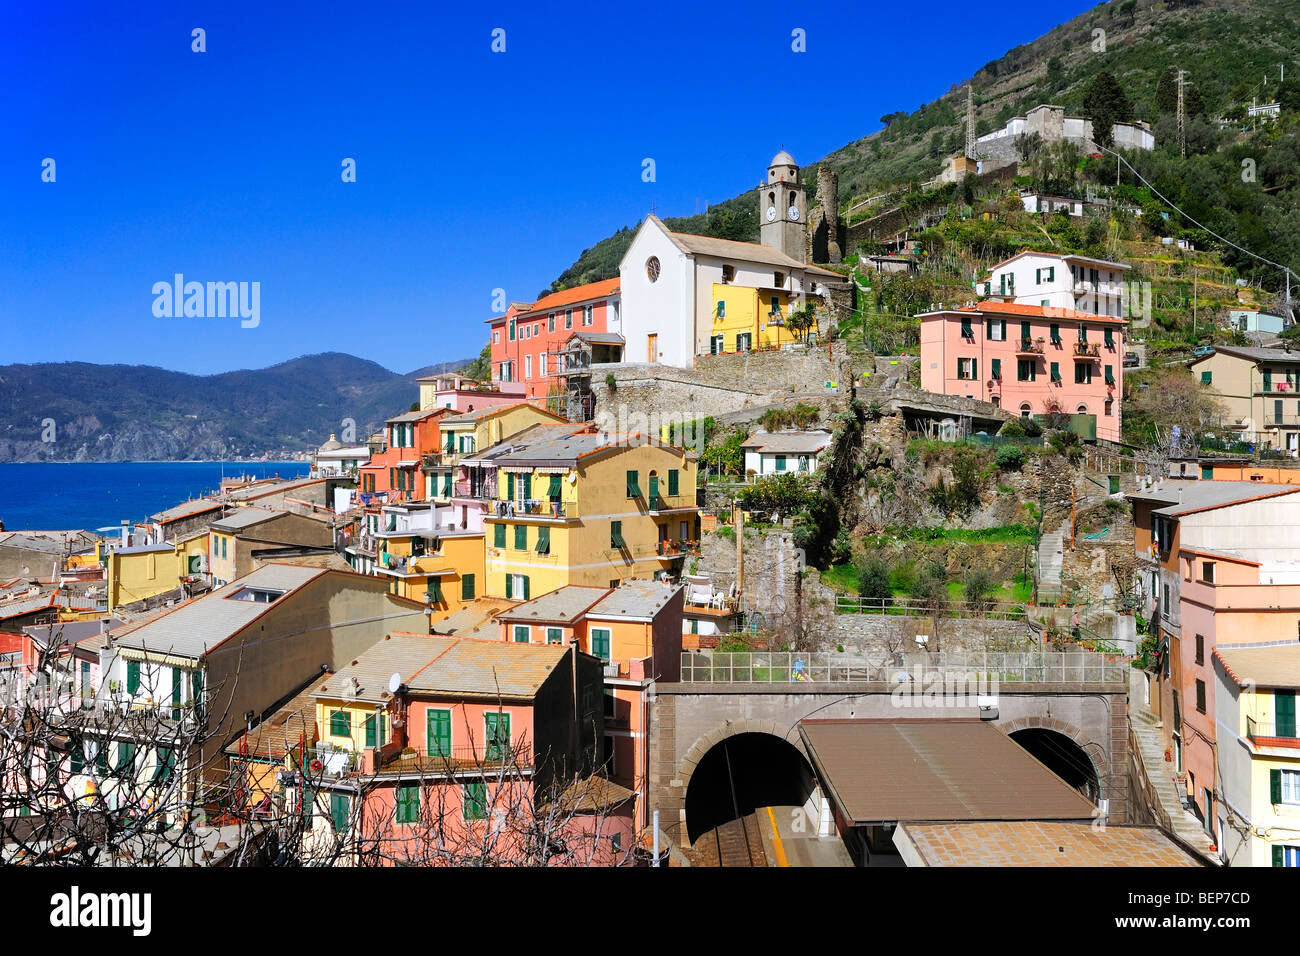 La estación de tren con el túnel en la aldea de Vernazza, Cinque Terre, Liguria, Italia. Foto de stock